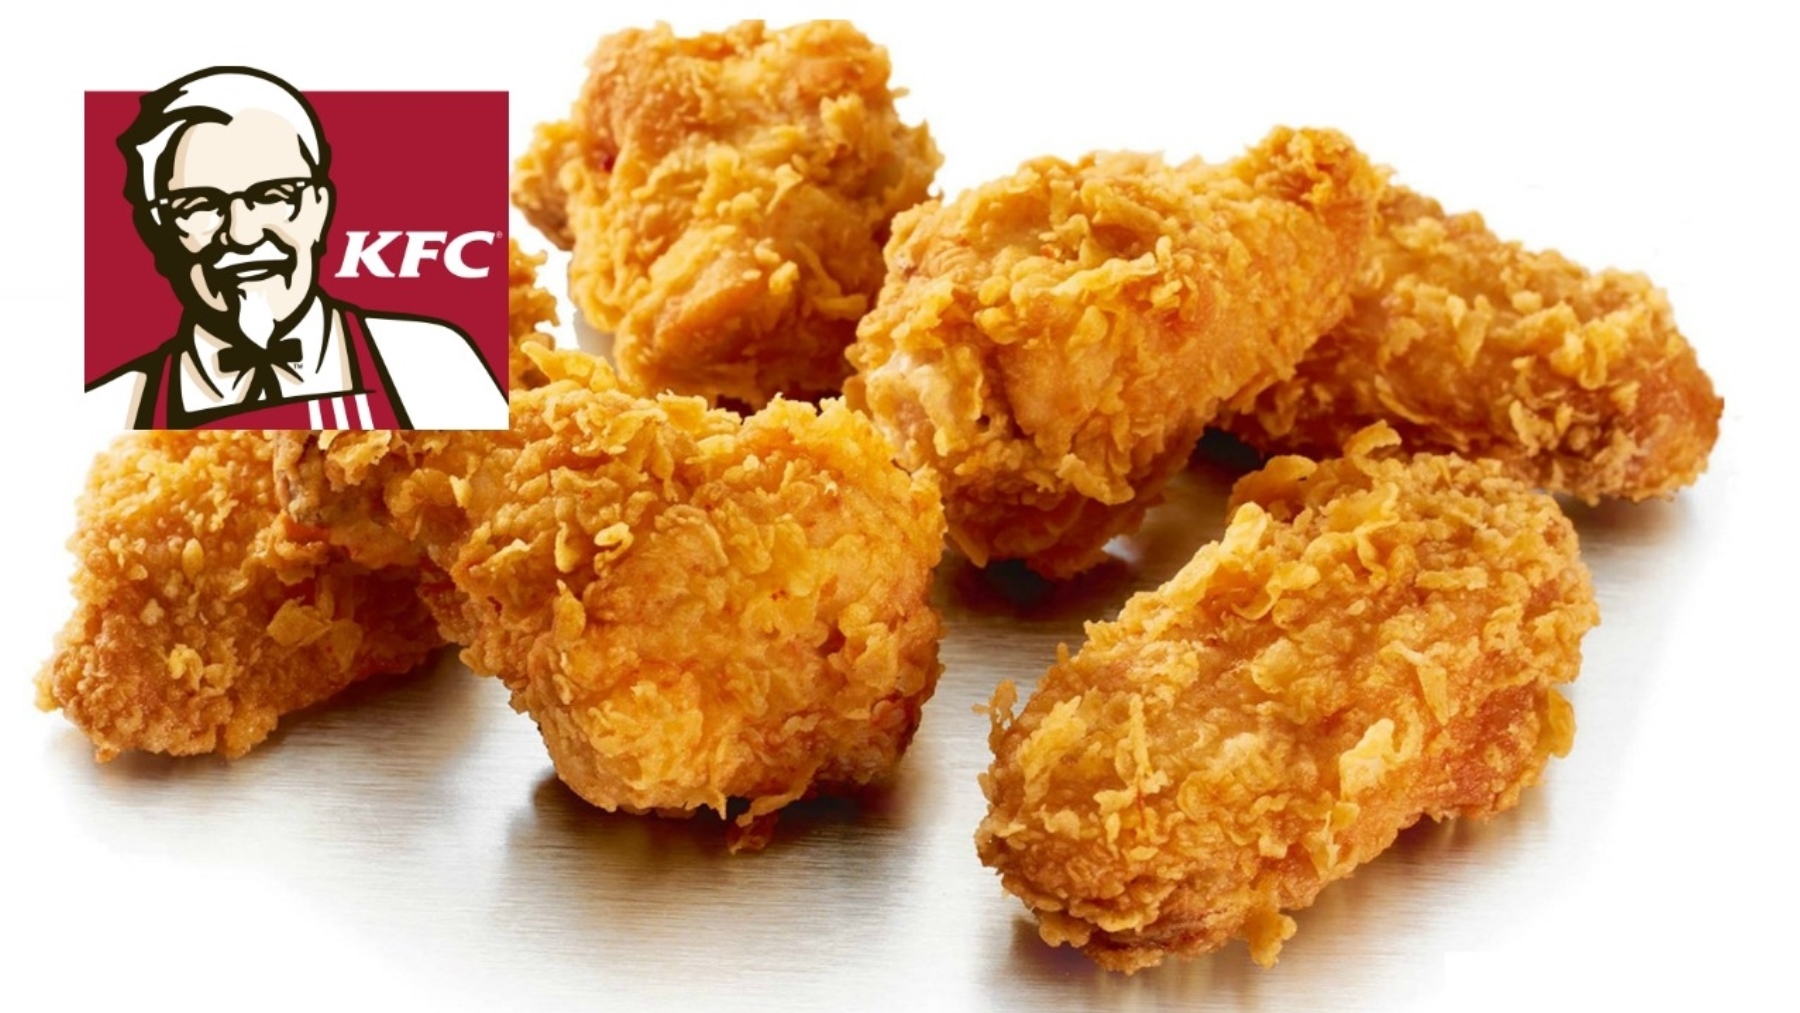 Pollo KFC gratis